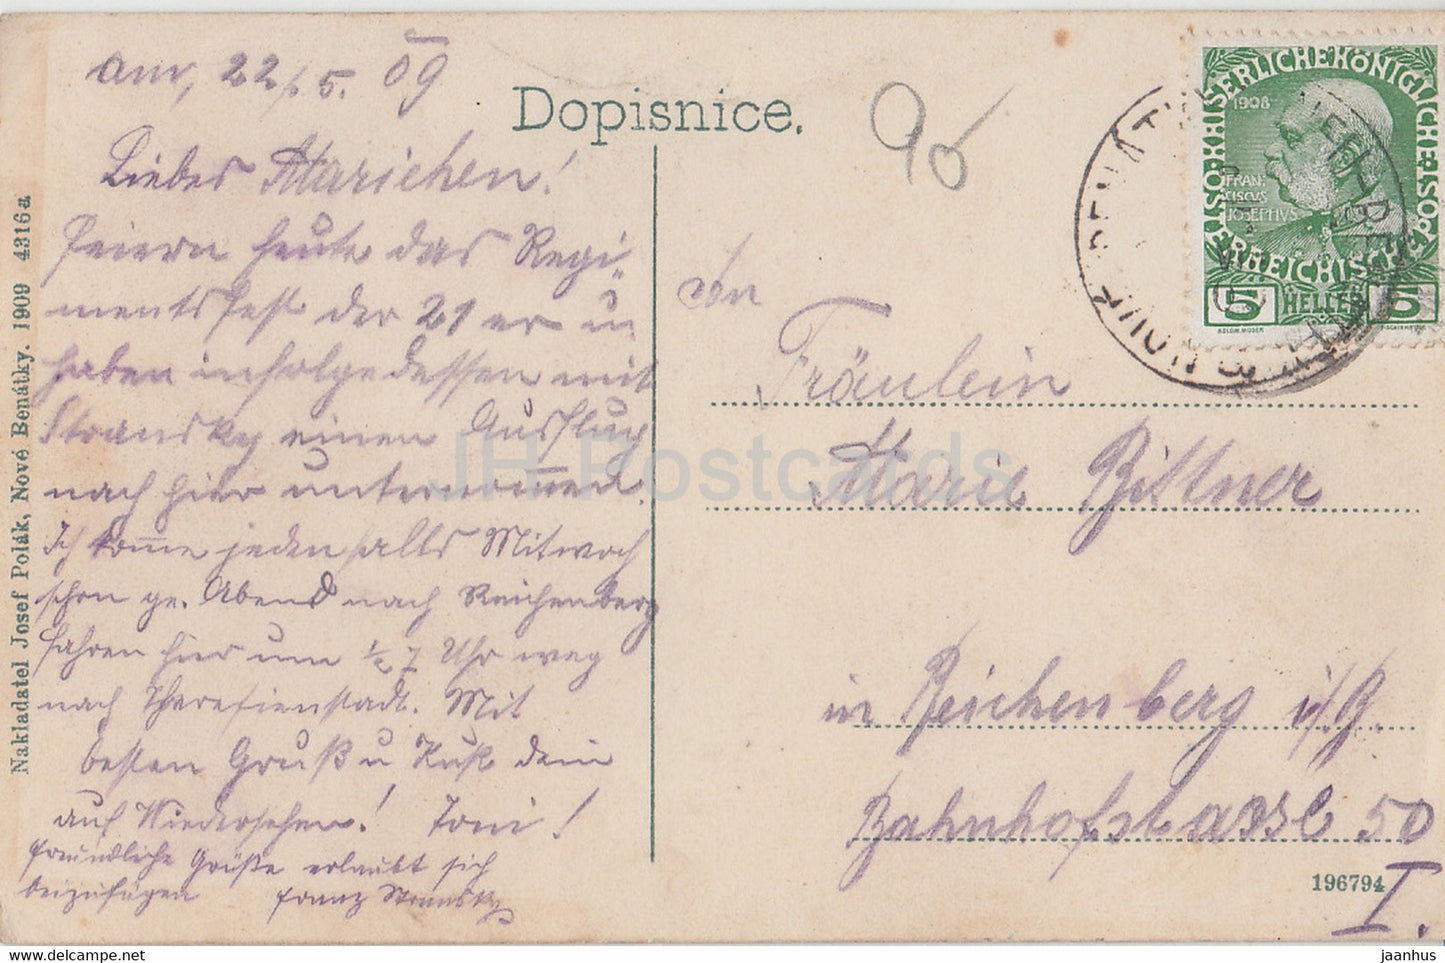 Stare Benatky - carte postale ancienne - 1909 - République tchèque - utilisé